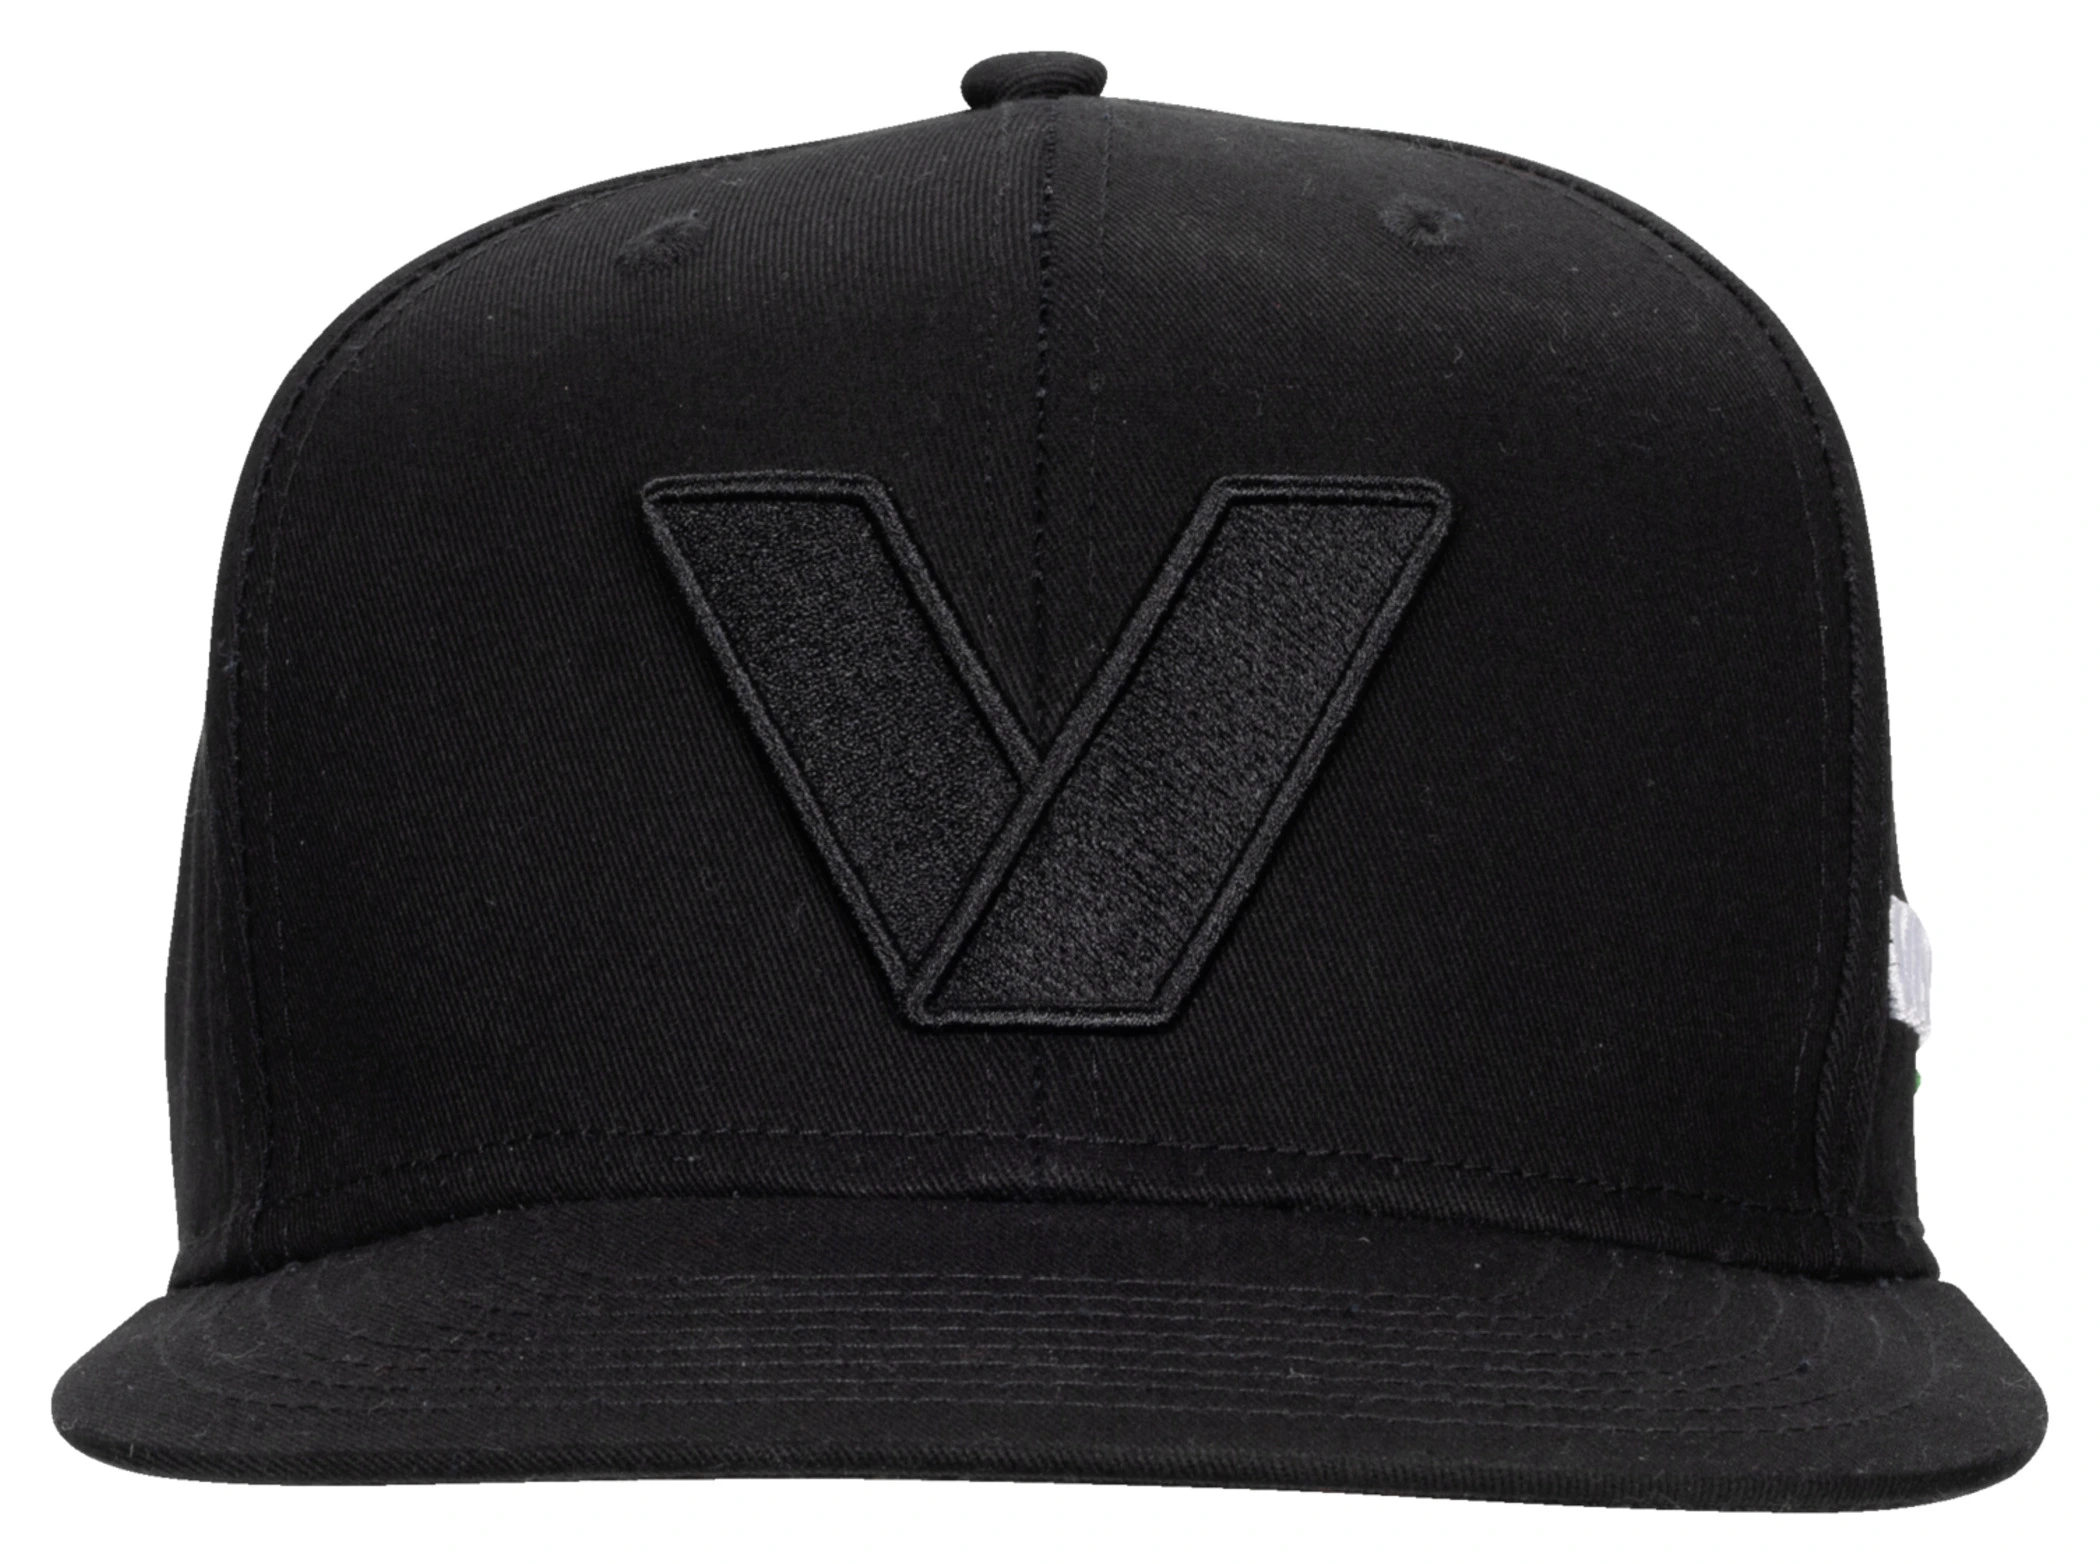 VANUCCI VXM-4 CAP BLACK